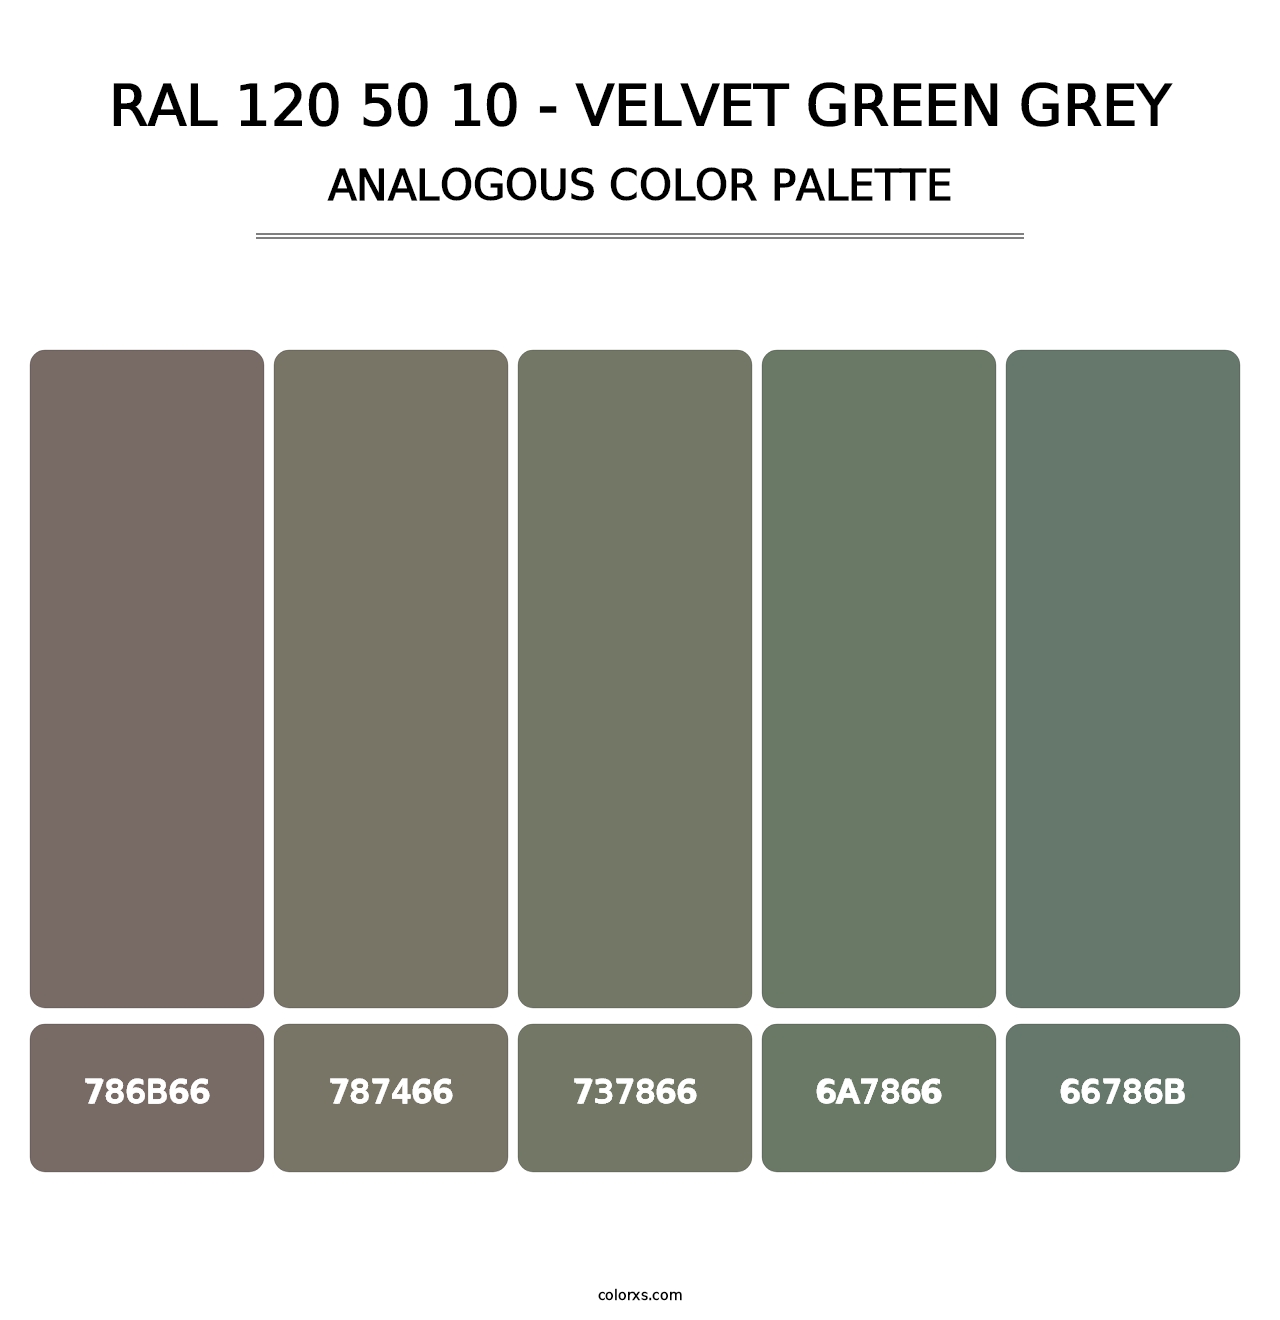 RAL 120 50 10 - Velvet Green Grey - Analogous Color Palette